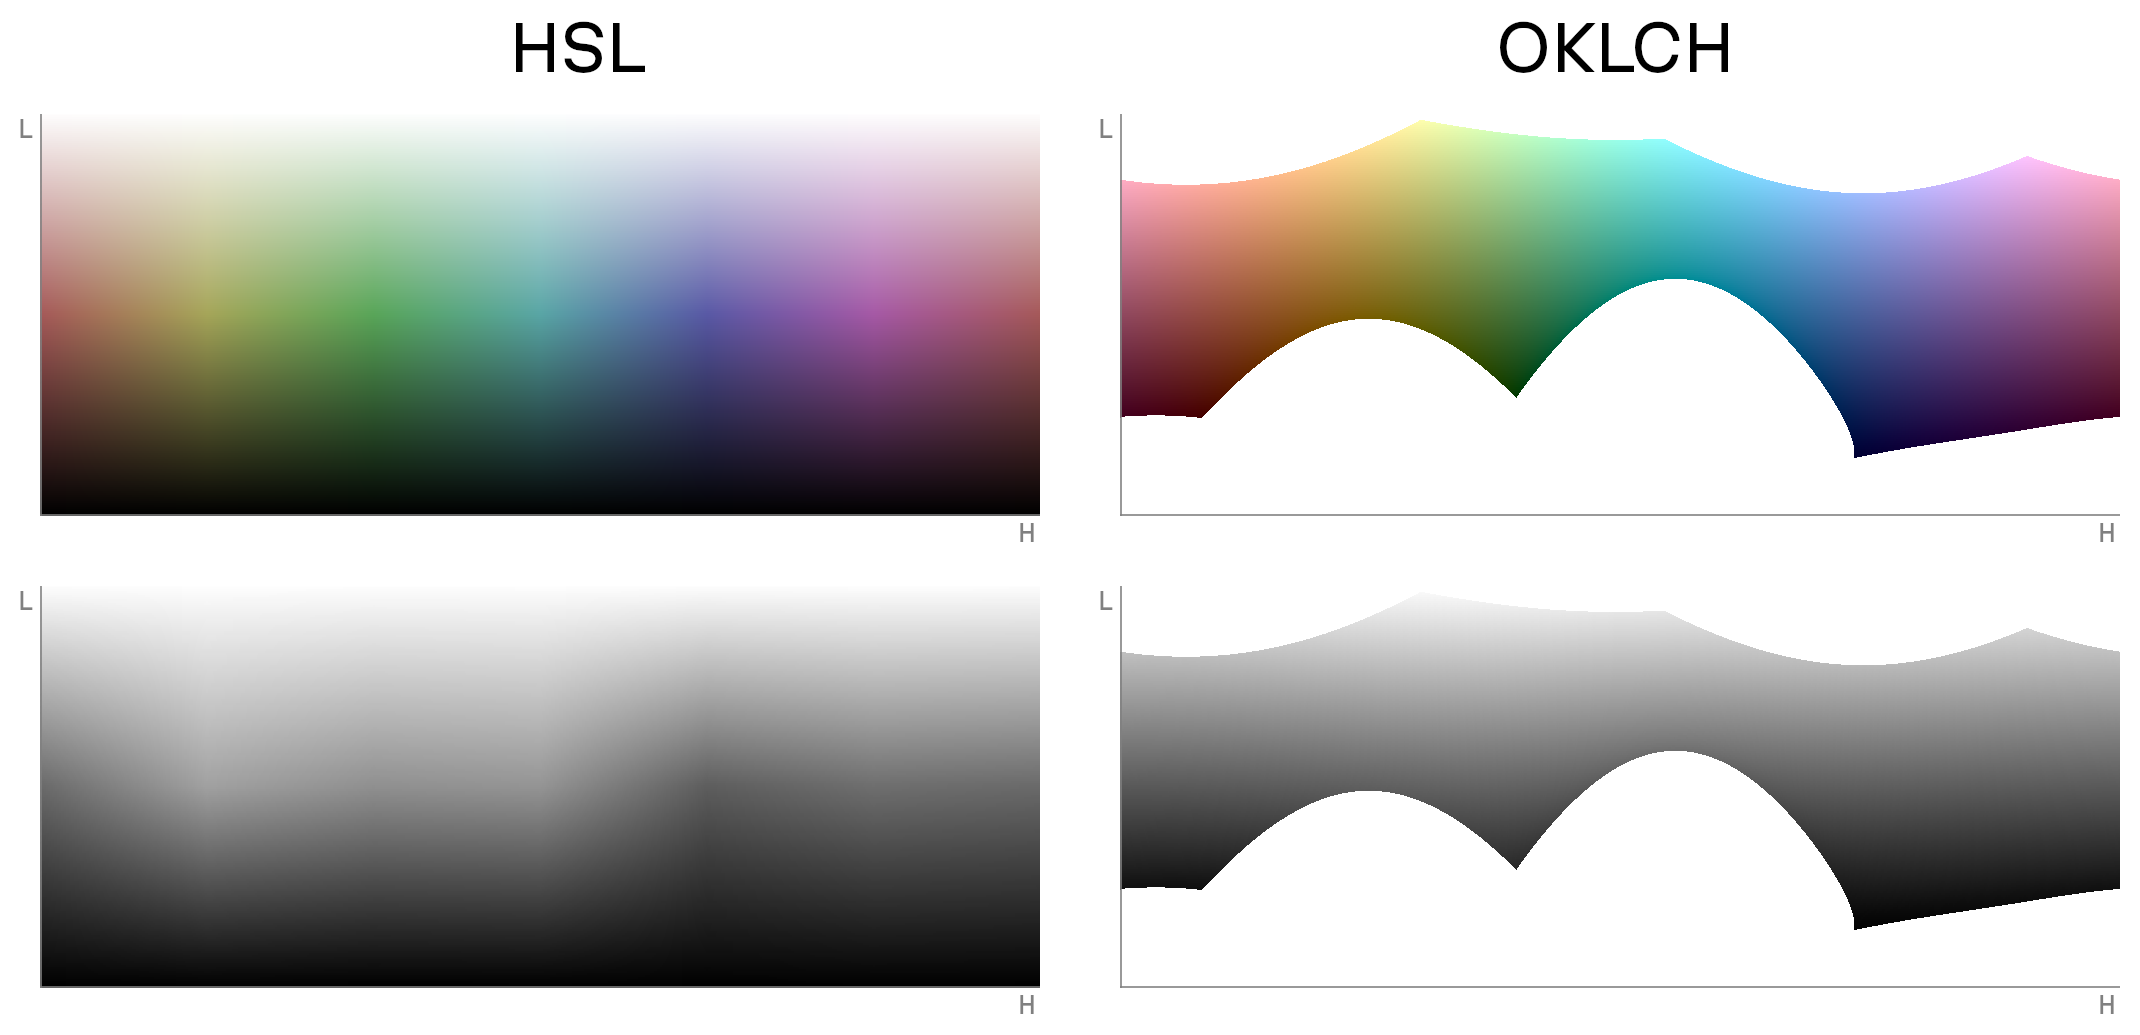 Четыре графика. Два сверху показывают пространства HSL и OKLCH с одинаковыми значениями насыщенности и интенсивности. Два снизу — аналогично для чёрного и белого цвета.